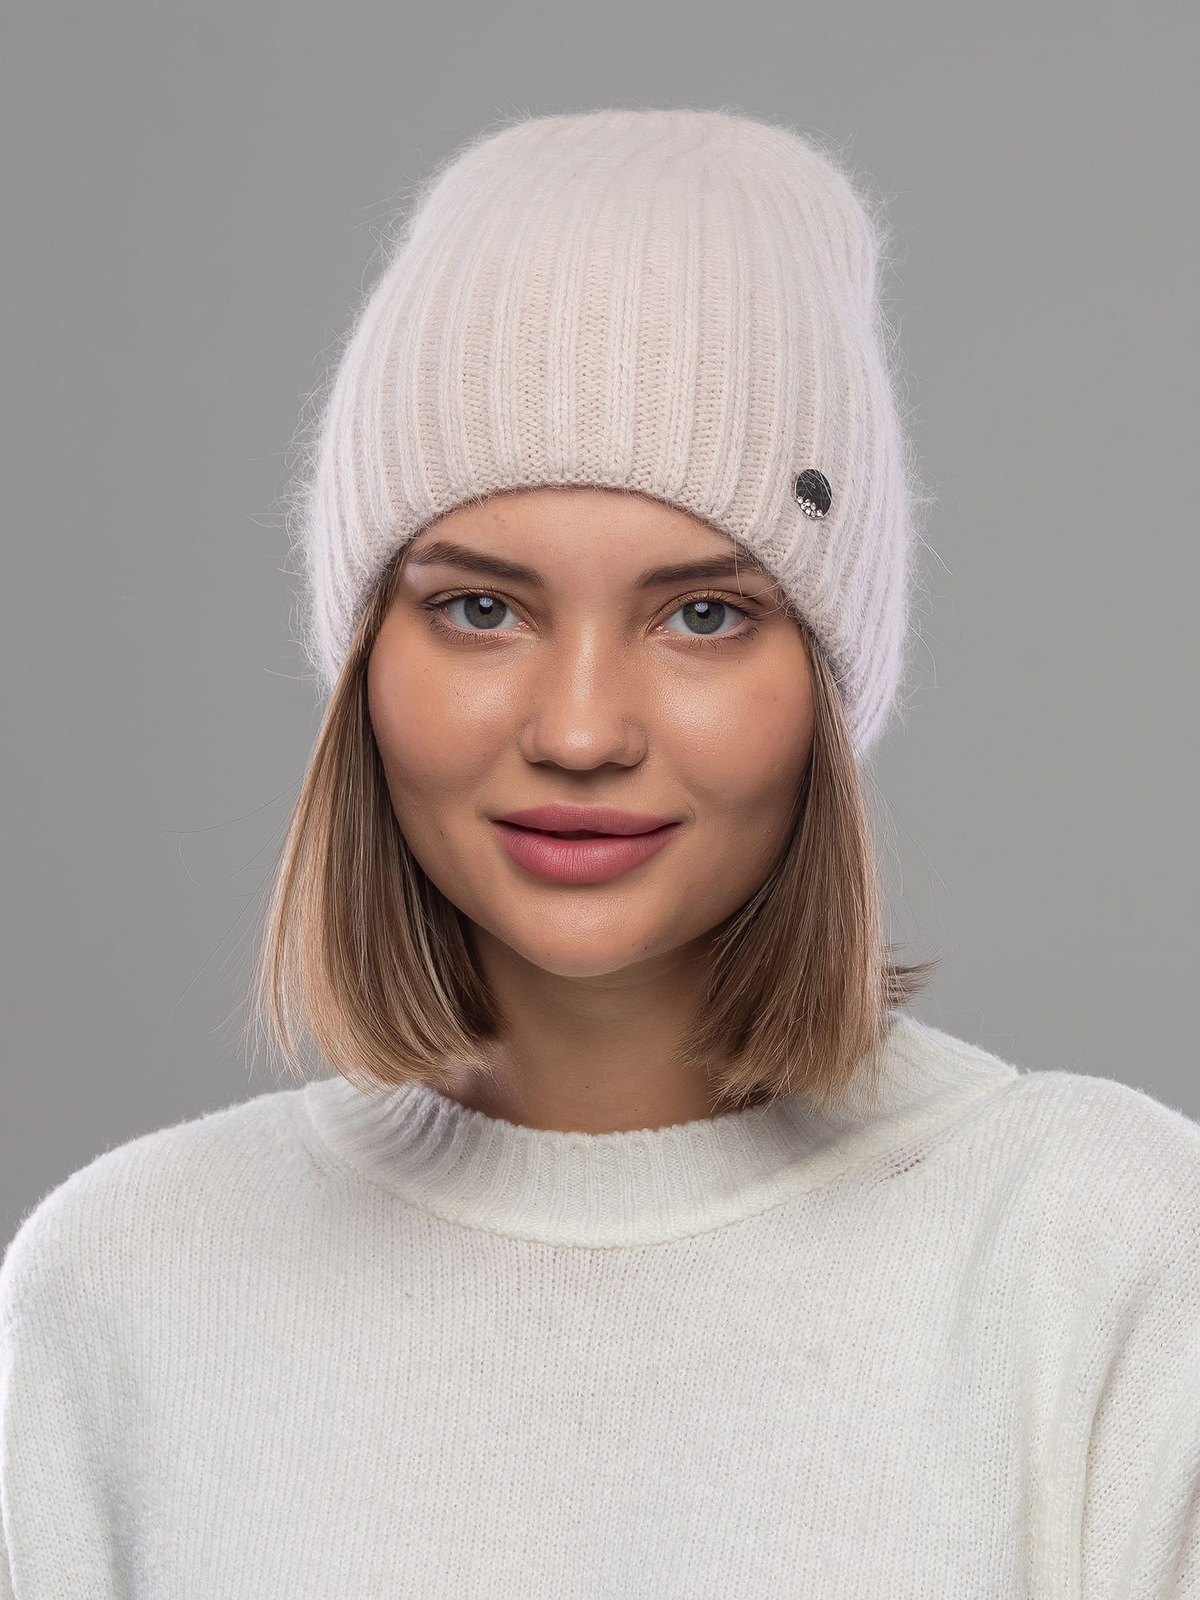 Теплая зимняя шапка из нежнейшей ангоры станет неотъемлемой частью вашего гардероба в холодное время года. Ее без отворотный дизайн делает ее идеальной для любого стиля и образа, добавляя утонченности вашему внешнему виду.